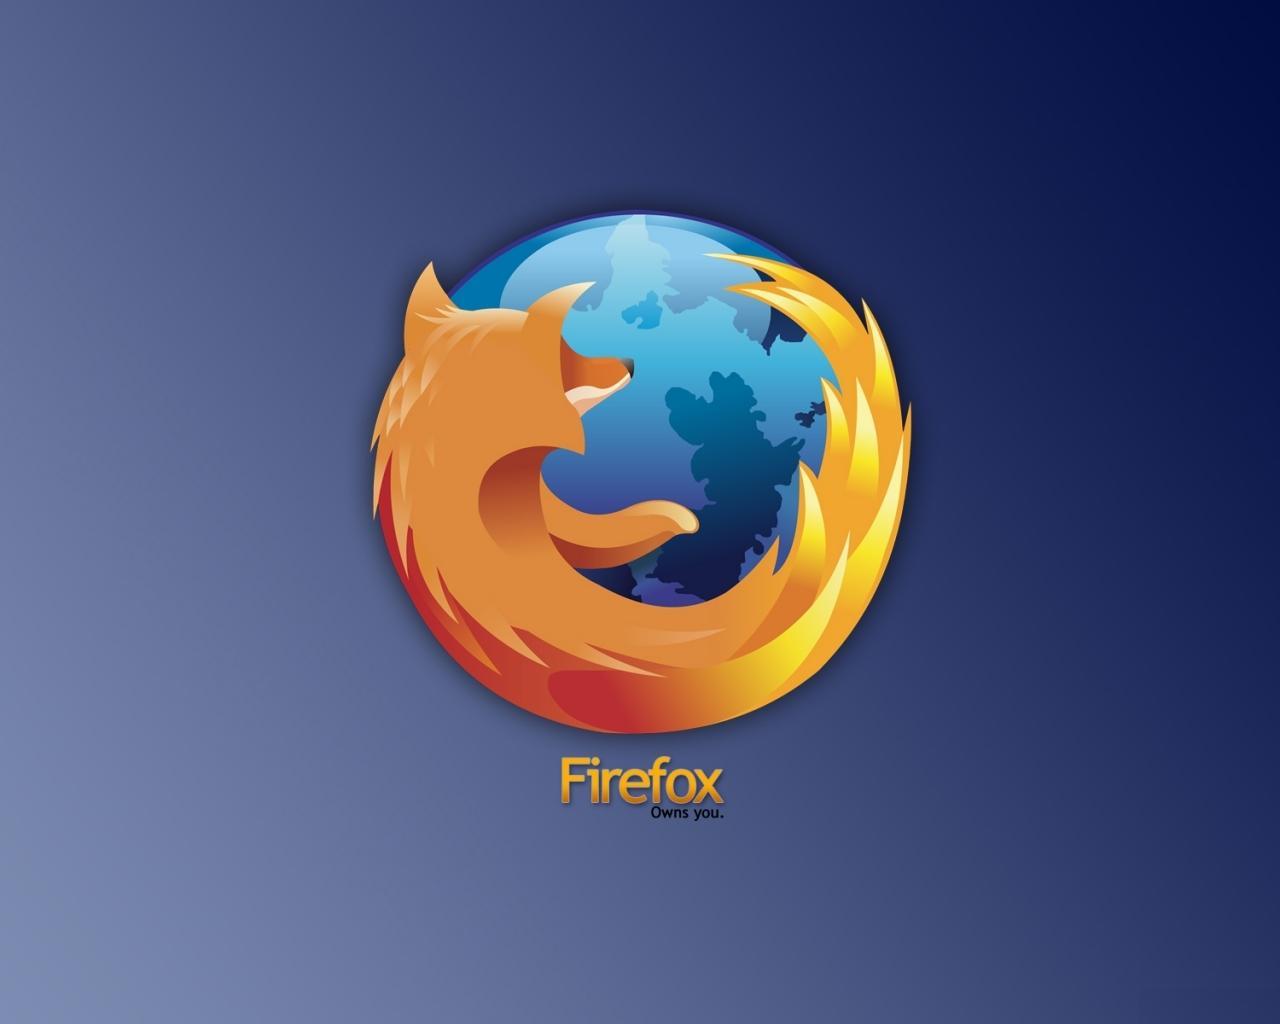 Обои на рабочий стол - Firefox (20-05-2009)